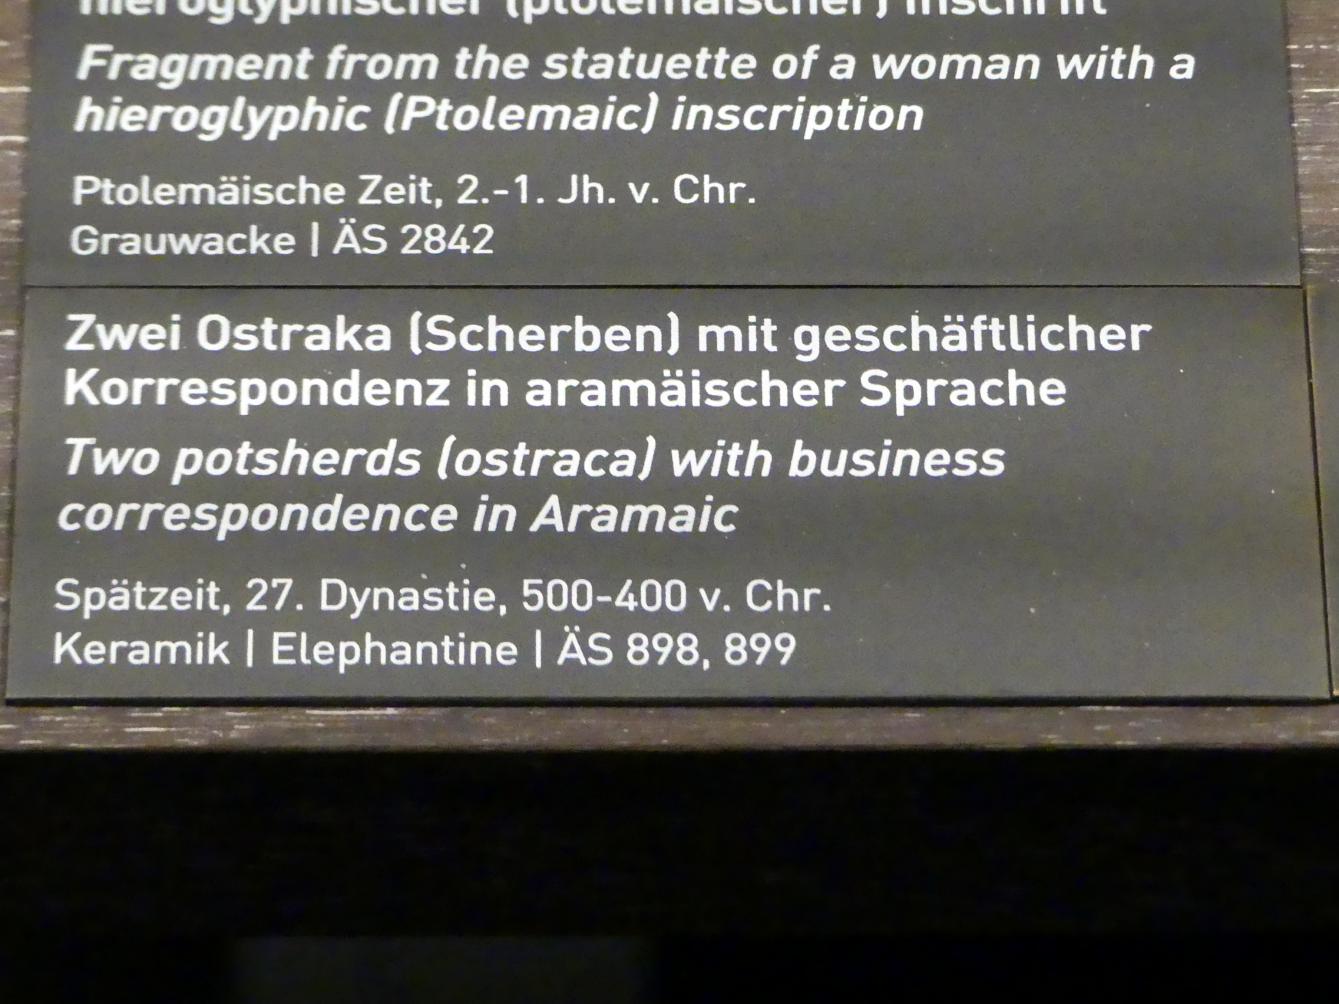 Zwei Ostraka (Scherben) mit geschäftlicher Korrespondenz in aramäischer Sprache, 27. Dynastie, 405 - 401 v. Chr., 500 - 400 v. Chr., Bild 2/2